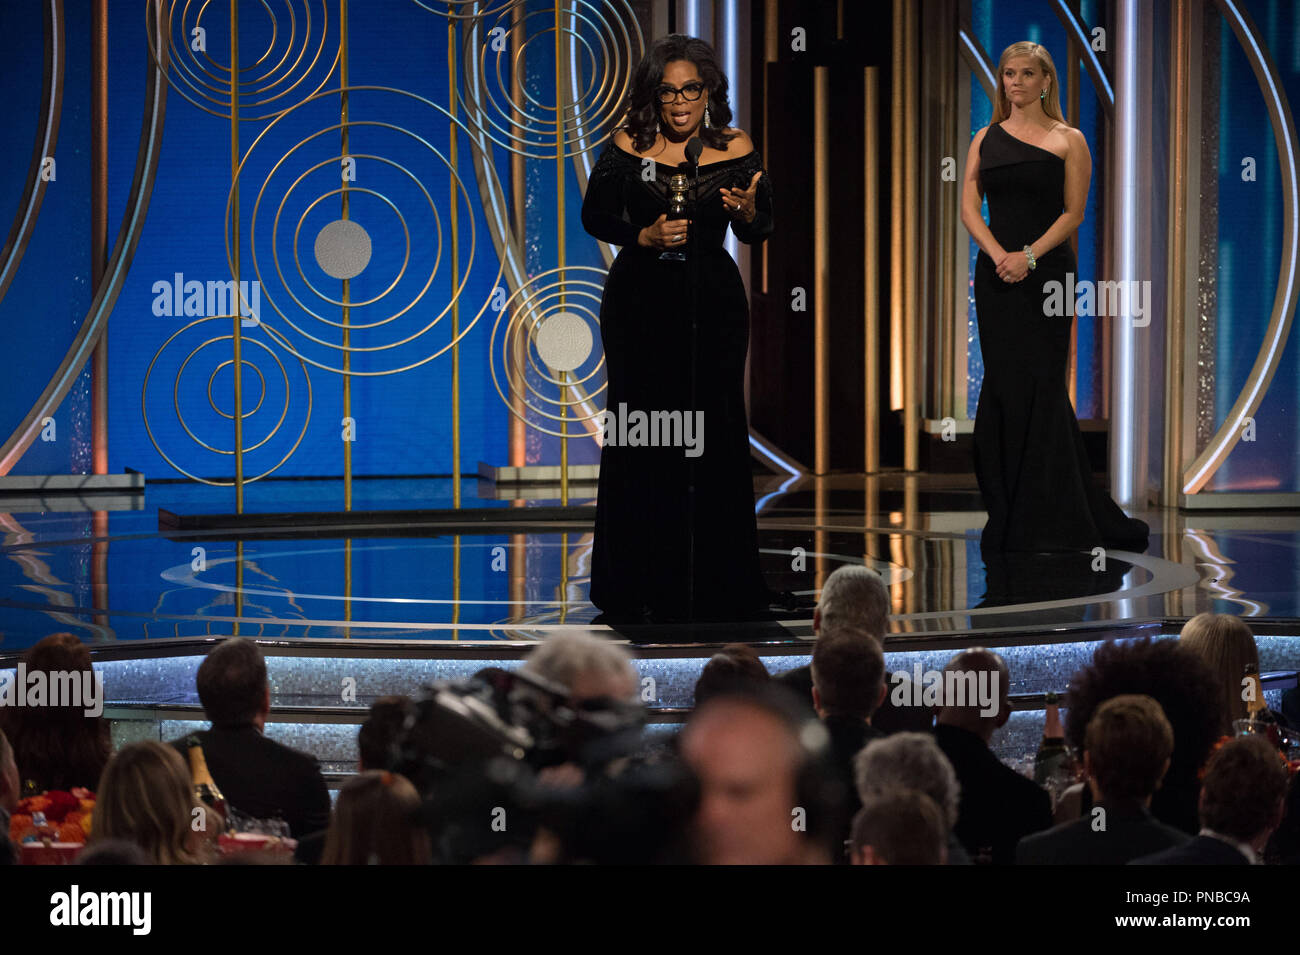 Oprah Winfrey accetta la Cecil B. DeMille Award per il suo "eccezionale contributo al campo di intrattenimento" al settantacinquesimo Annuale di Golden Globe Awards presso il Beverly Hilton di Beverly Hills, CA il 7 gennaio 2018. Riferimento al file # 33508 557CCR per solo uso editoriale - Tutti i diritti riservati Foto Stock